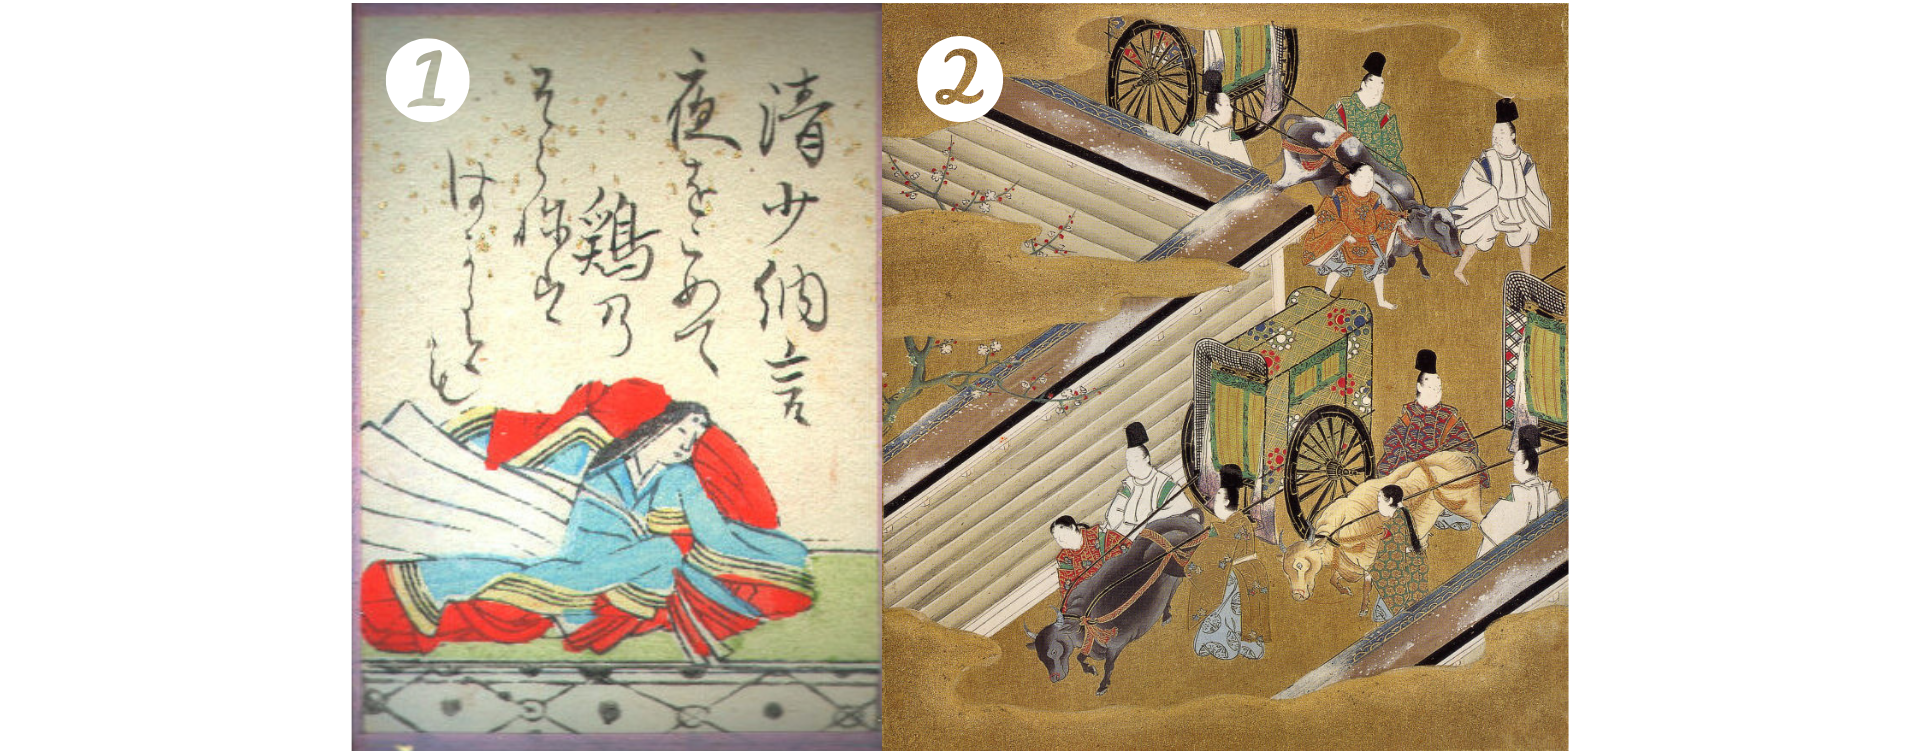 Heian легенды re written. Период Нара и Хэйан в Японии. Часы в эпохе Хэйан. Карта периода Нара и Хэйан средние века. Социальная система а Хэйан.